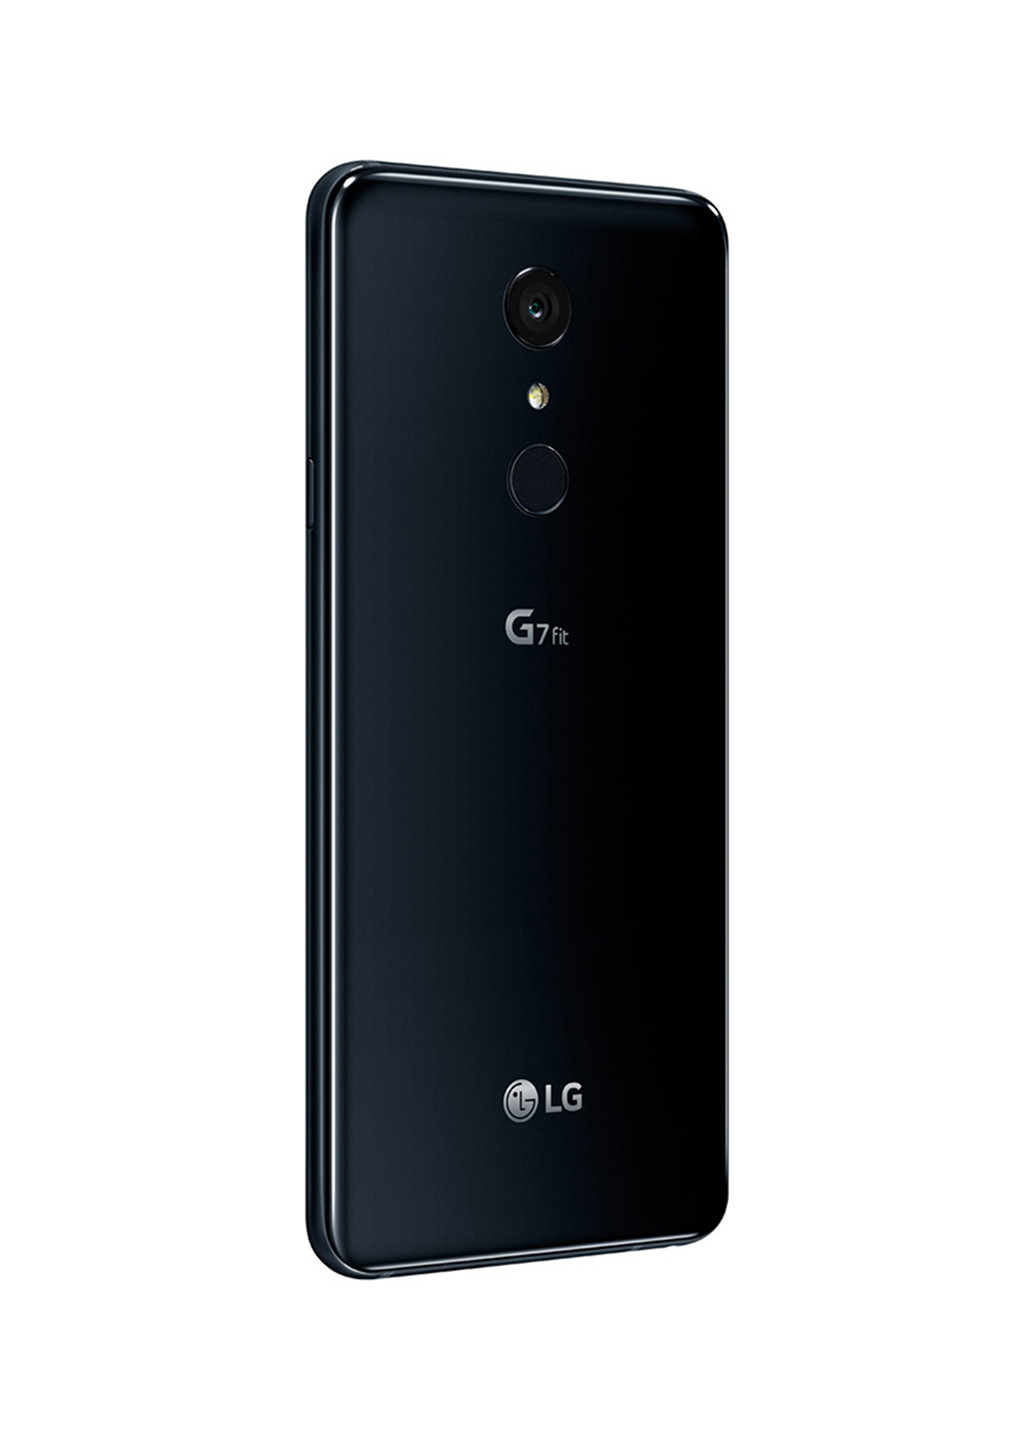 Смартфон G7 Fit 4 / 32GB Aurora Black (Q850EMW) LG g7 fit 4/32gb aurora black (q850emw) (130423261)